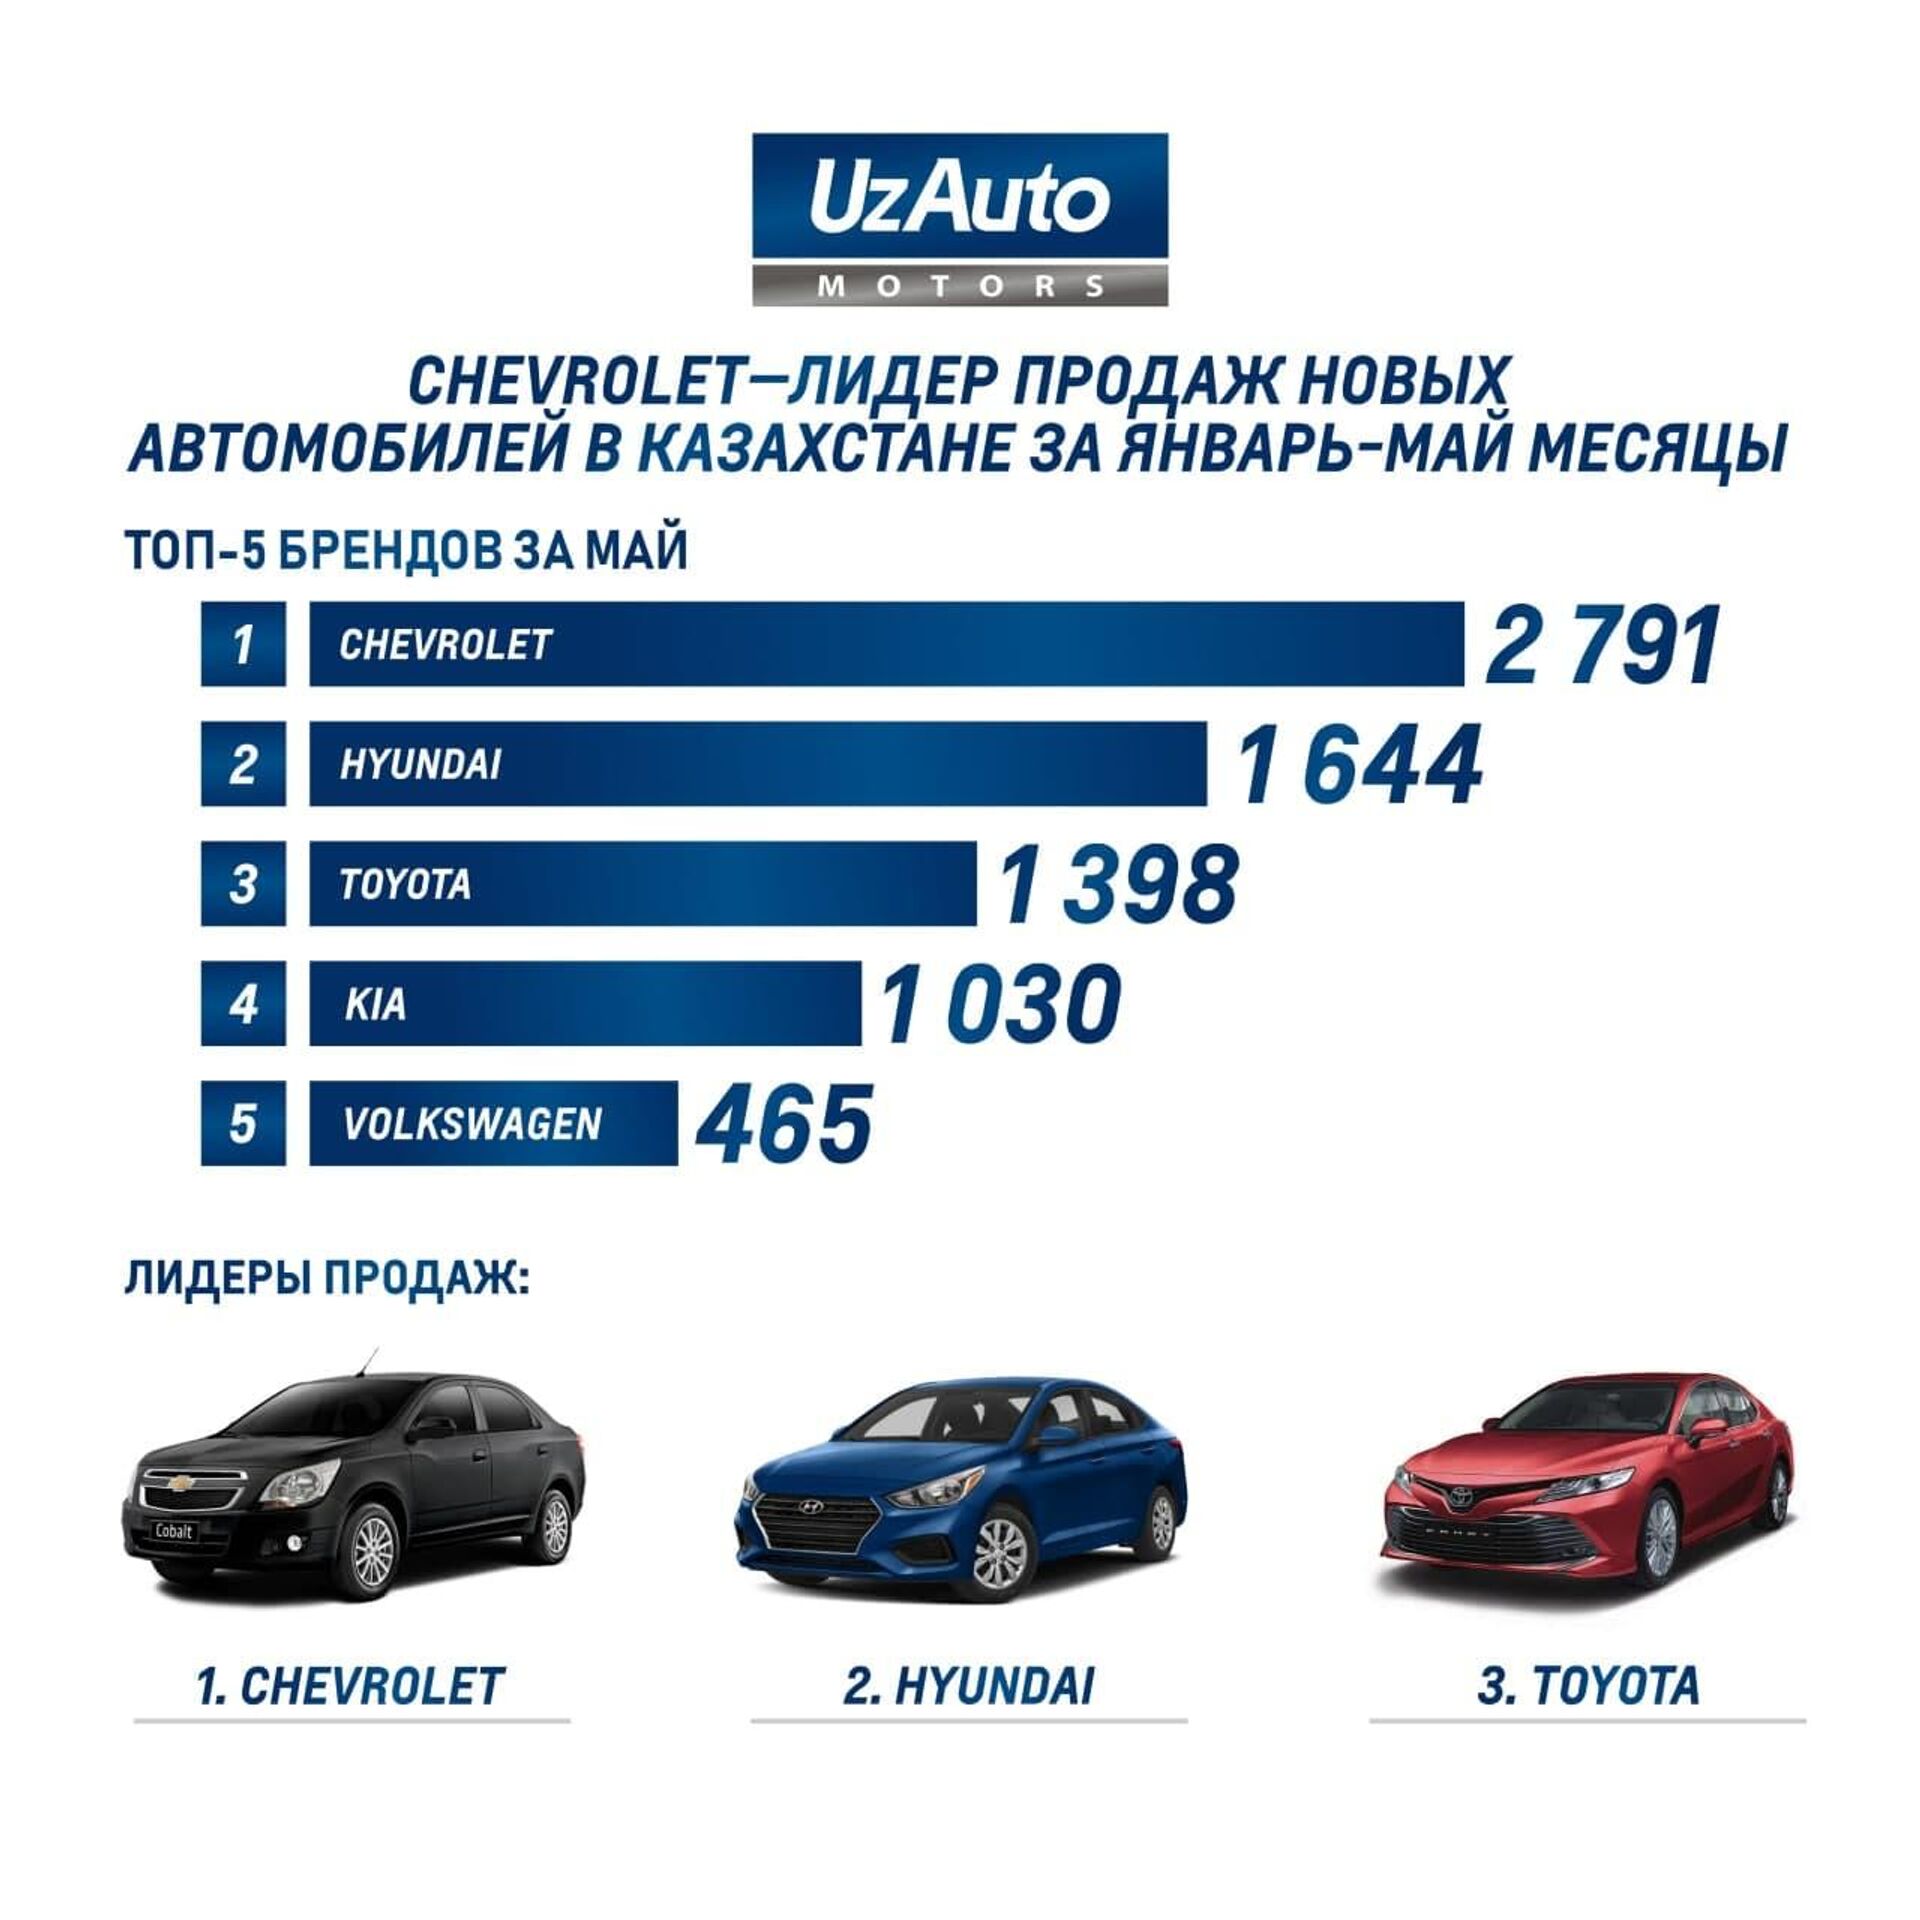 Chevrolet лидирует в десятке ведущих автомобильных брендов Казахстана - Sputnik Узбекистан, 1920, 17.06.2021